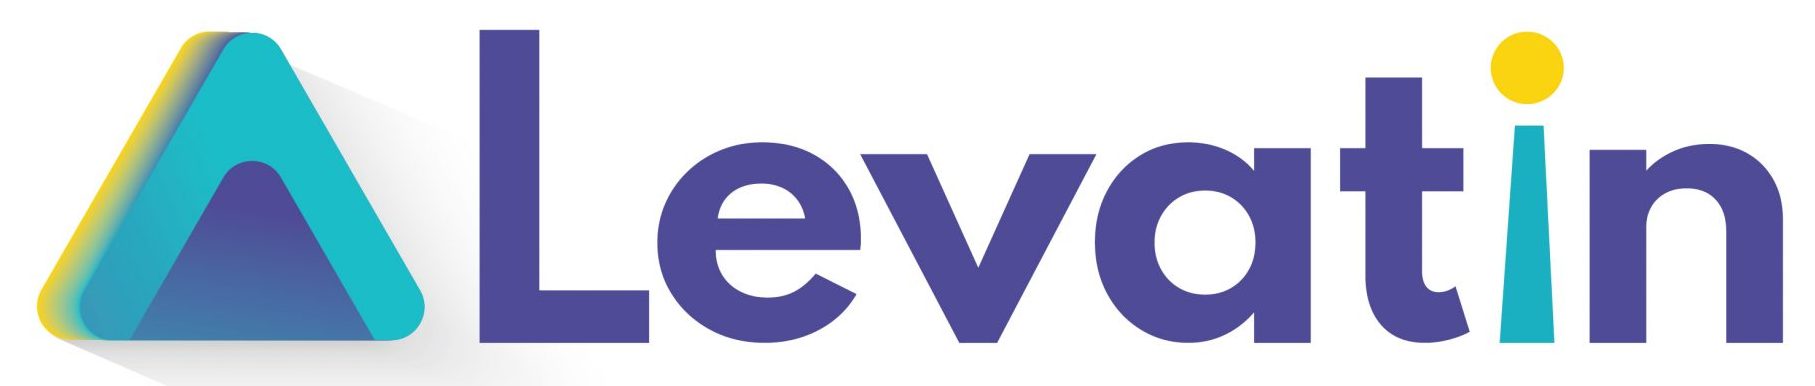 cropped-Levatin-Logo-1-scaled-1.jpg